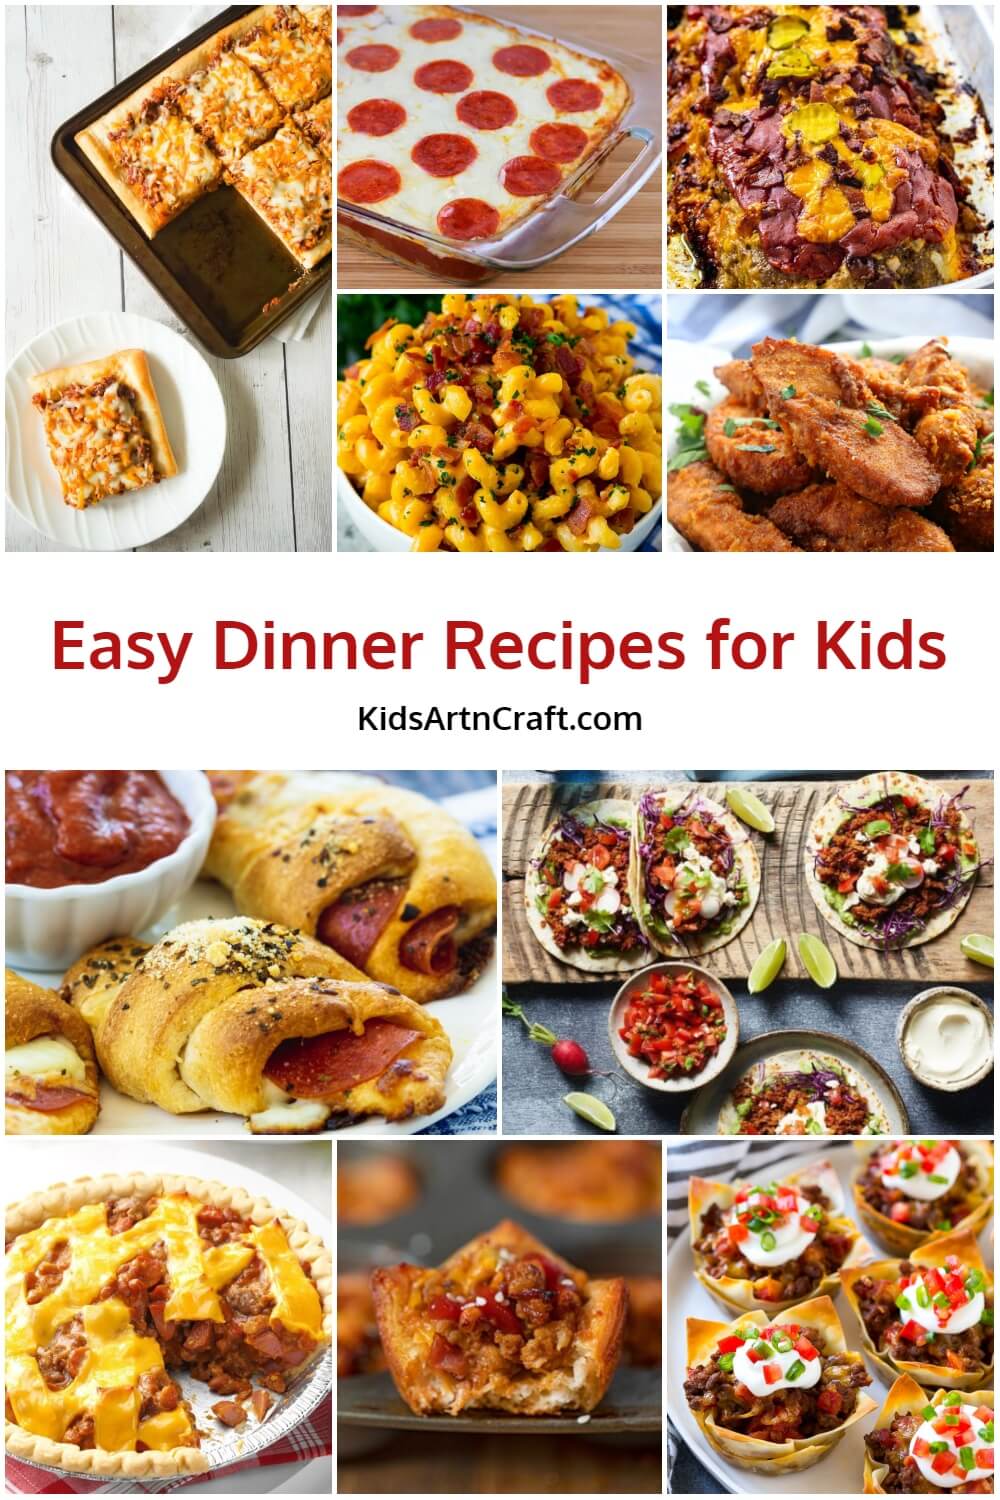 Easy Dinner Recipes for Kids - Kids Art & Craft